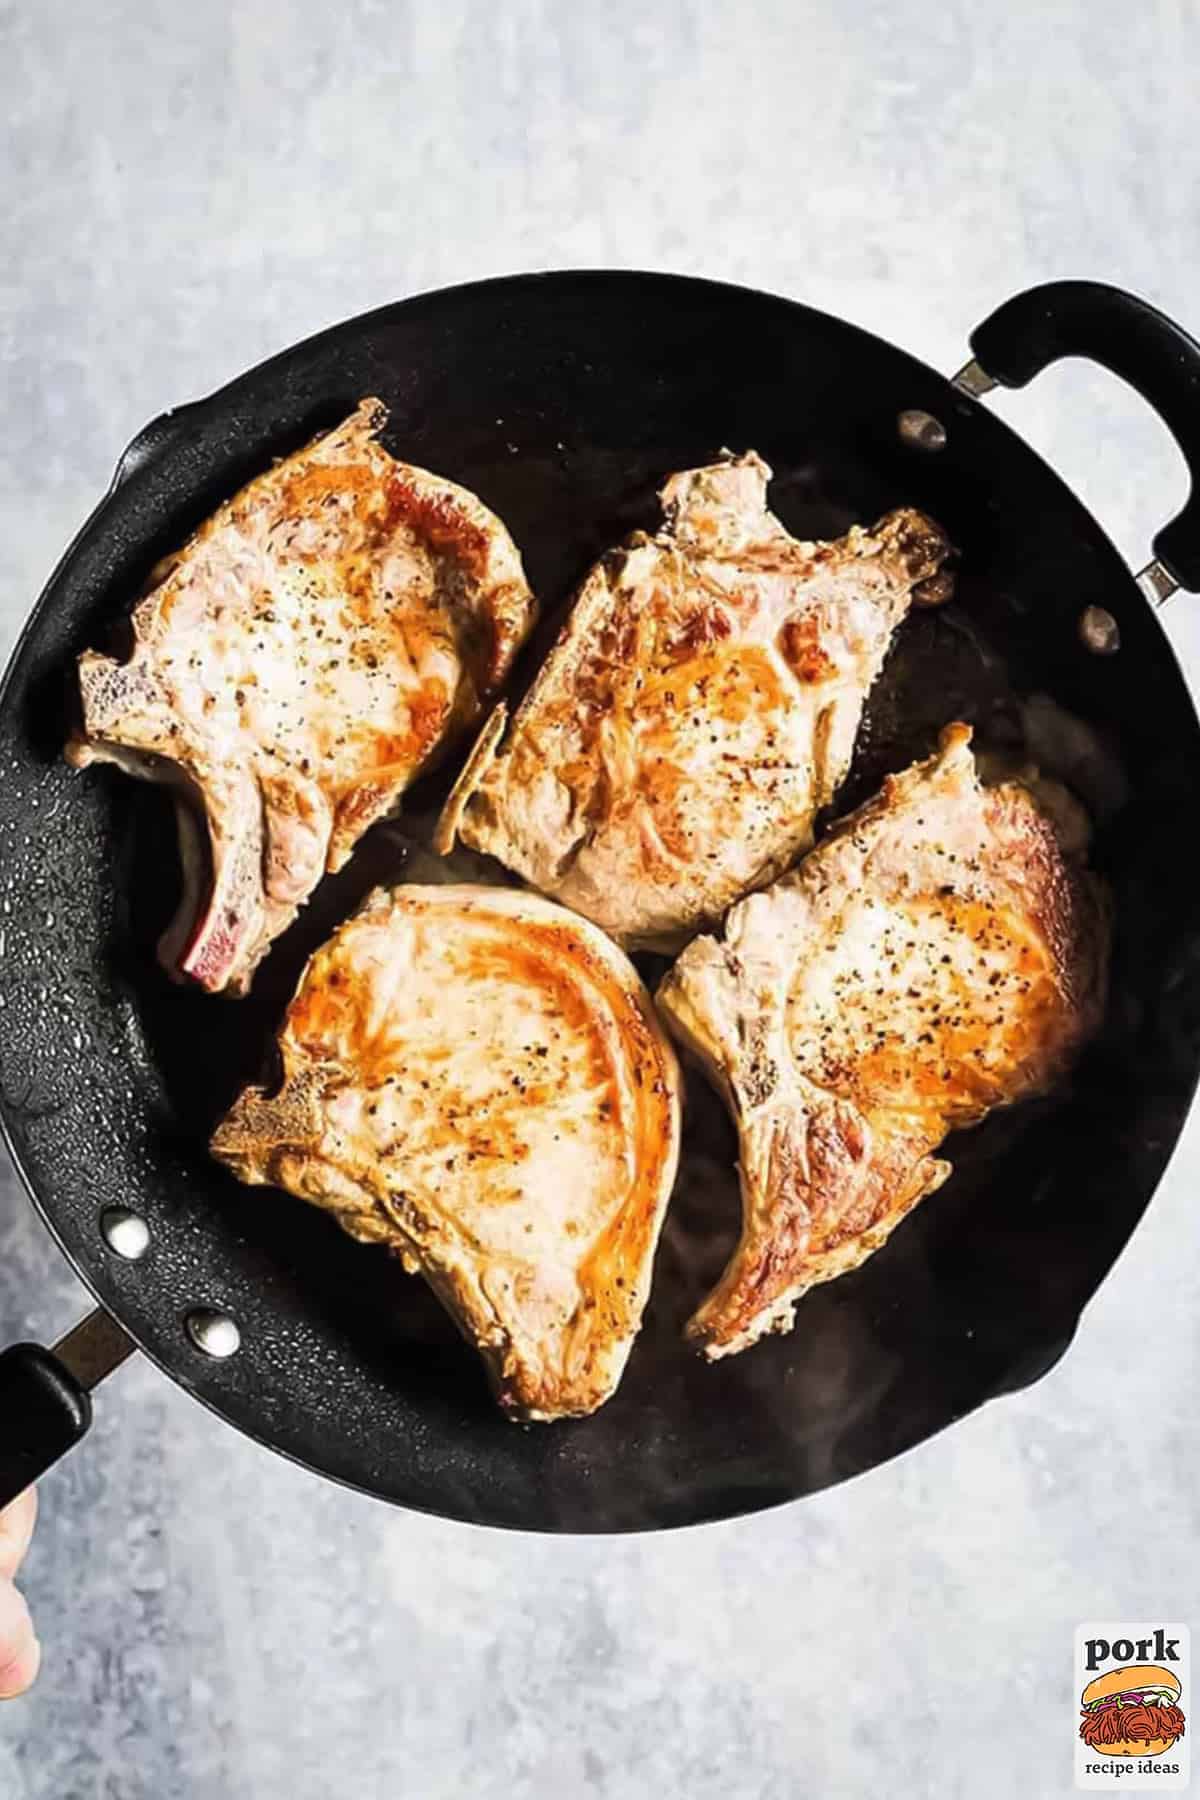 pan fried pork chops in a pan